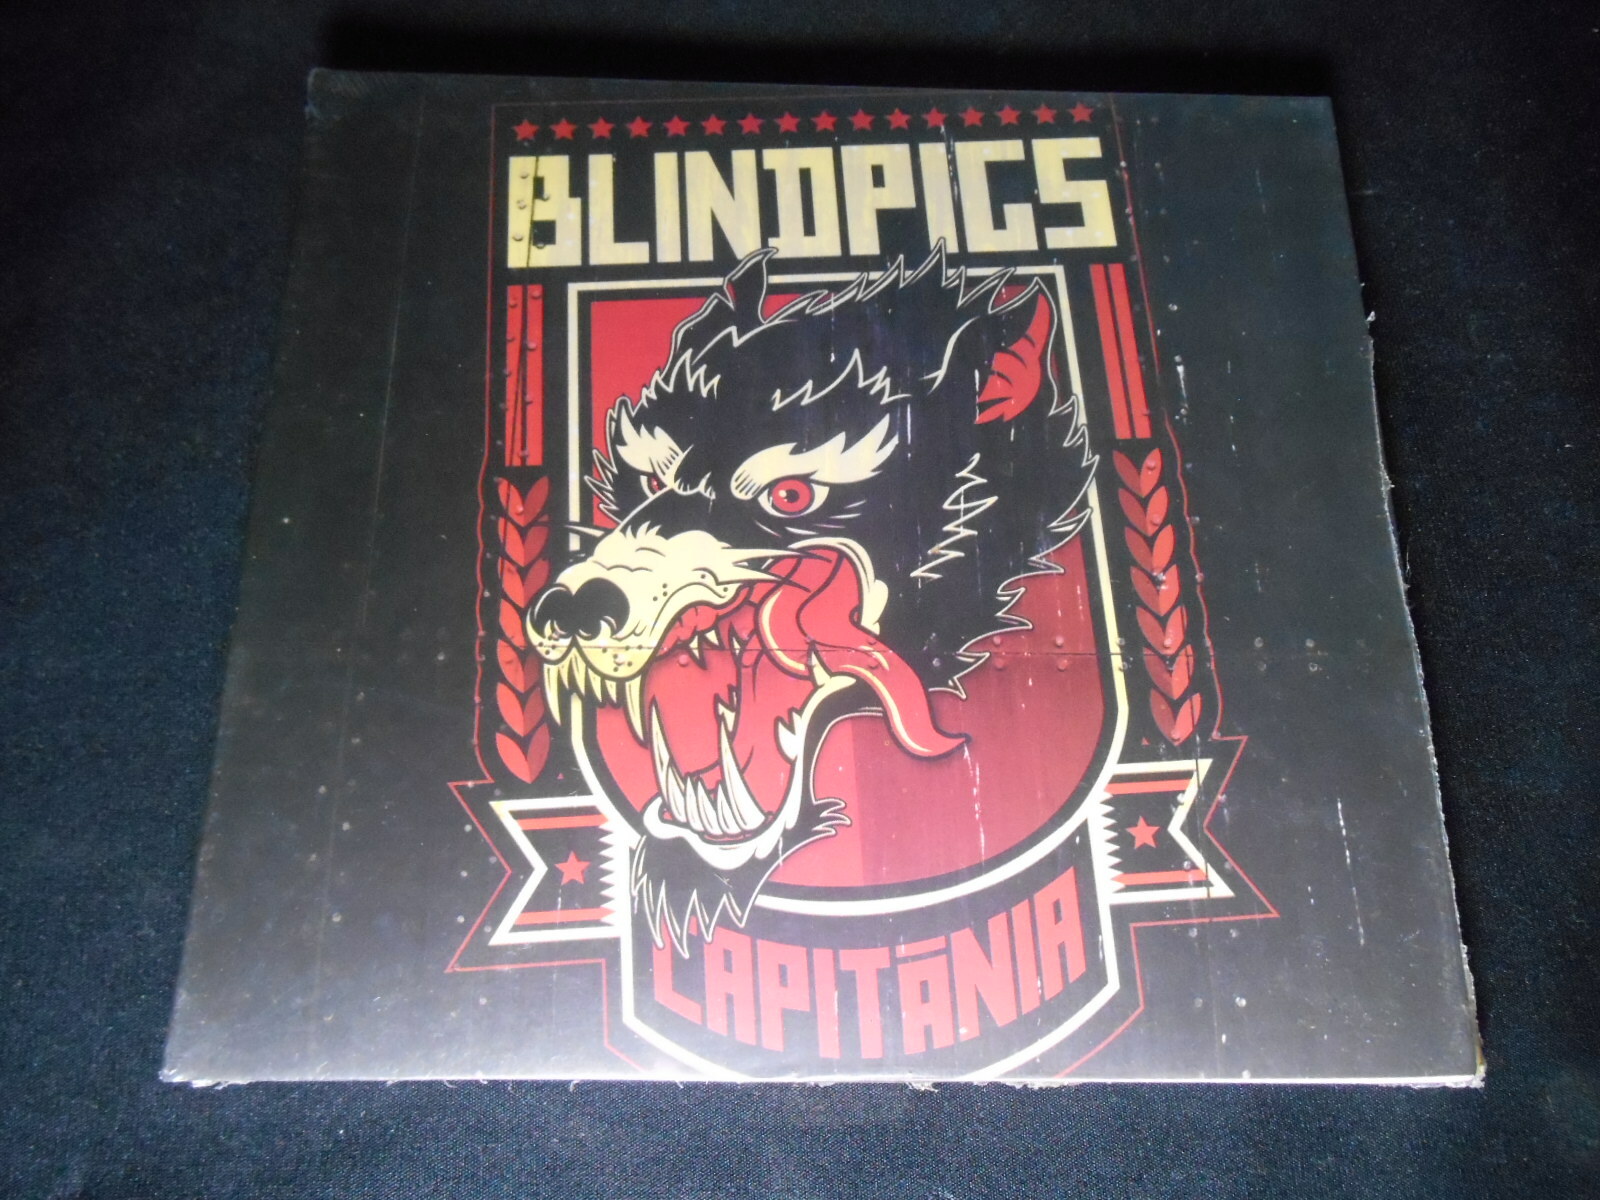 CD - Blind Pigs - Capitânia (Digipack/Lacrado)